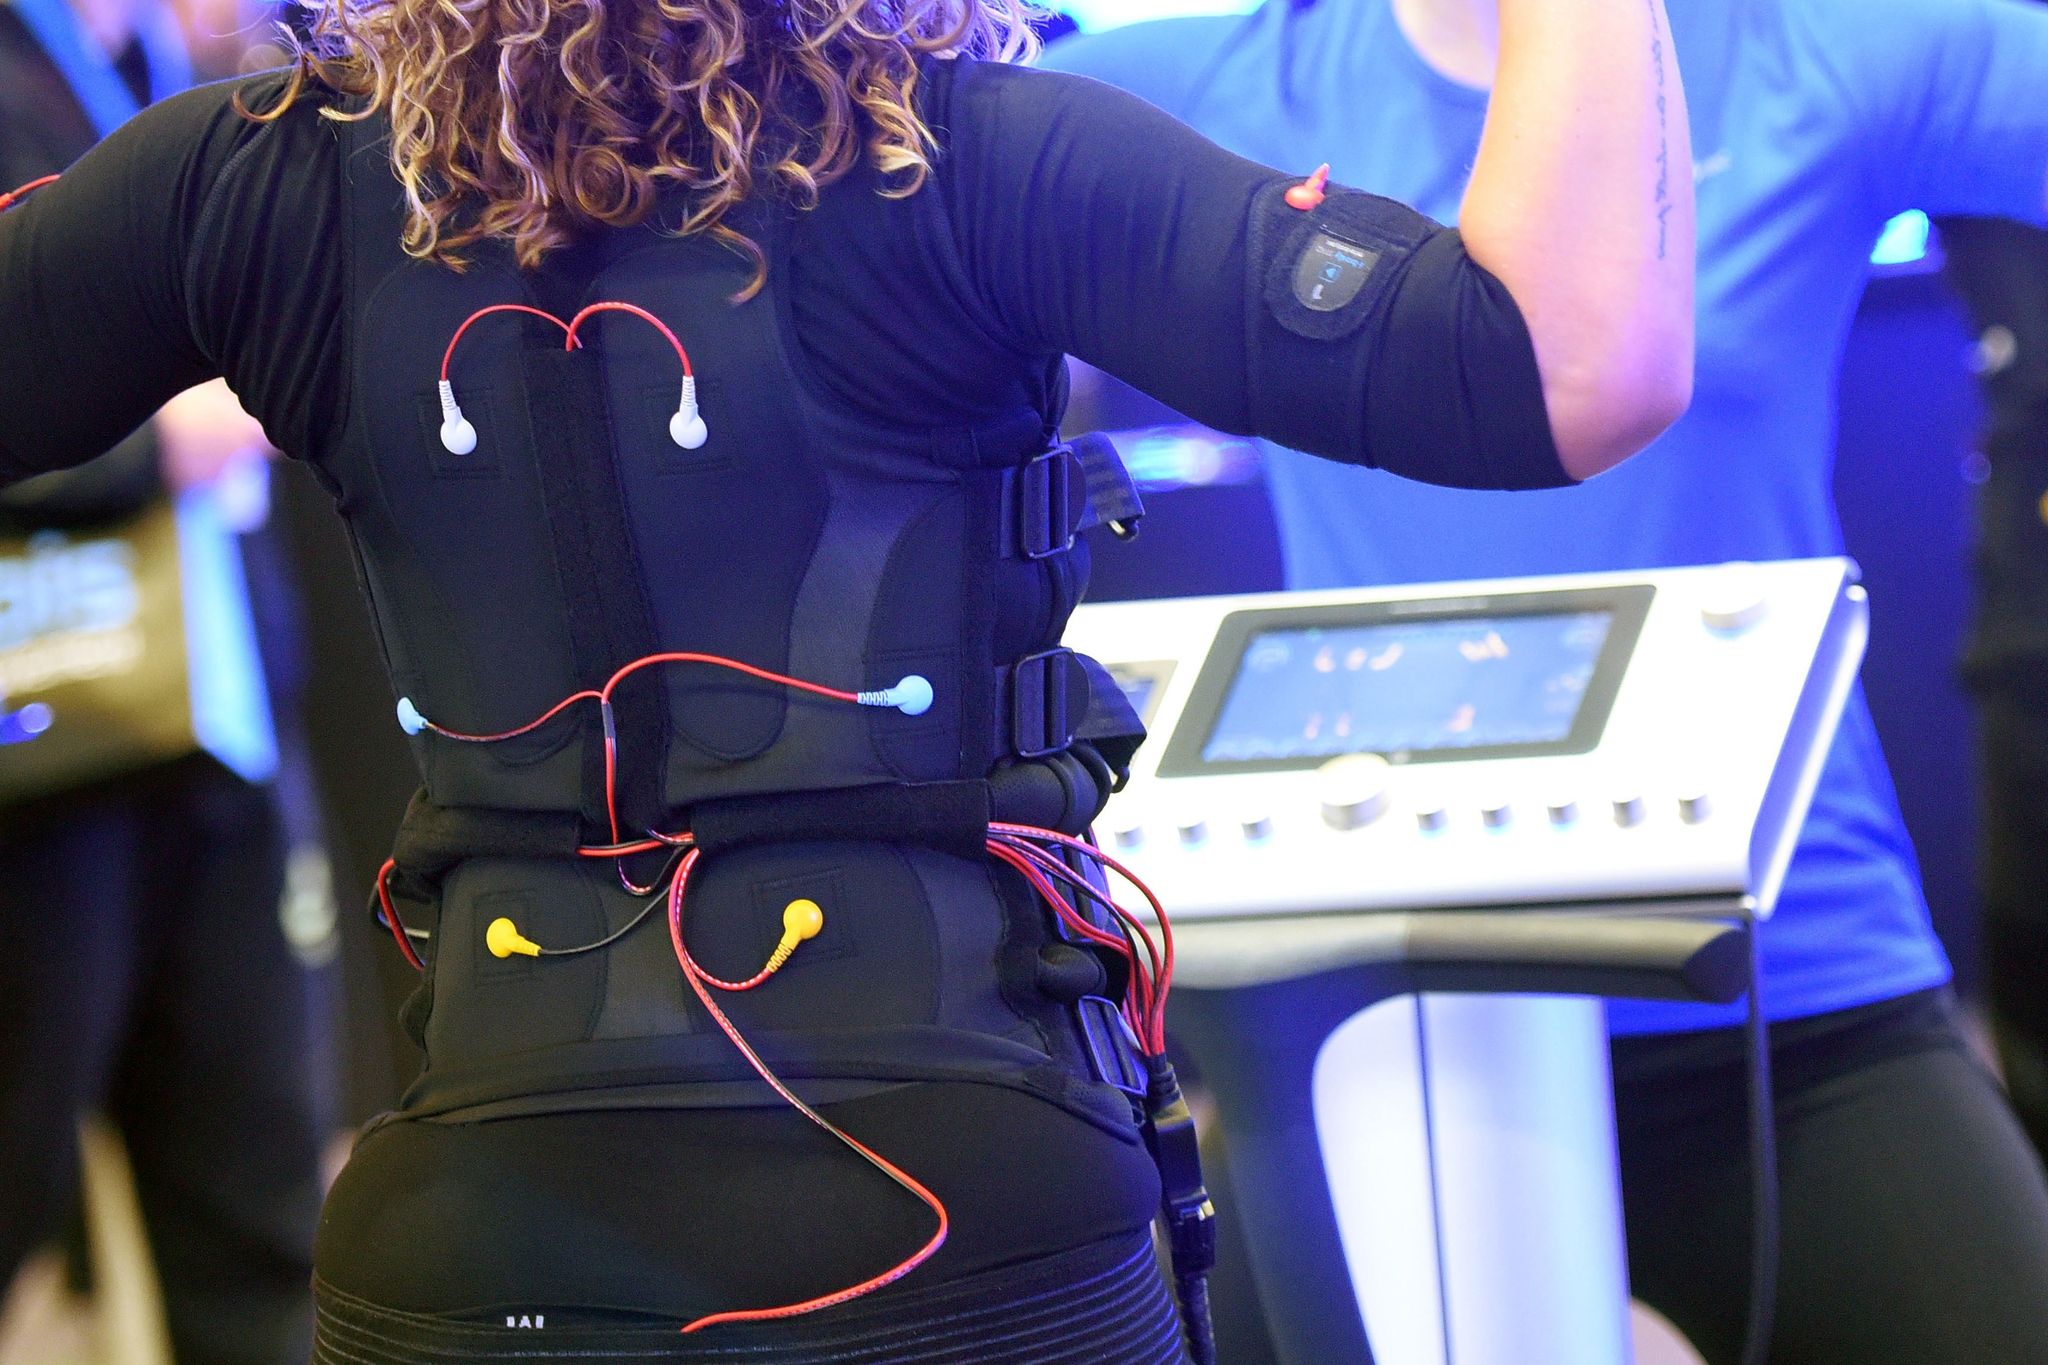 Bei einem EMS-Training trägt man eine verkabelte Weste und Manschetten, über die elektrische Impulse an den Körper weitergeleitet werden.